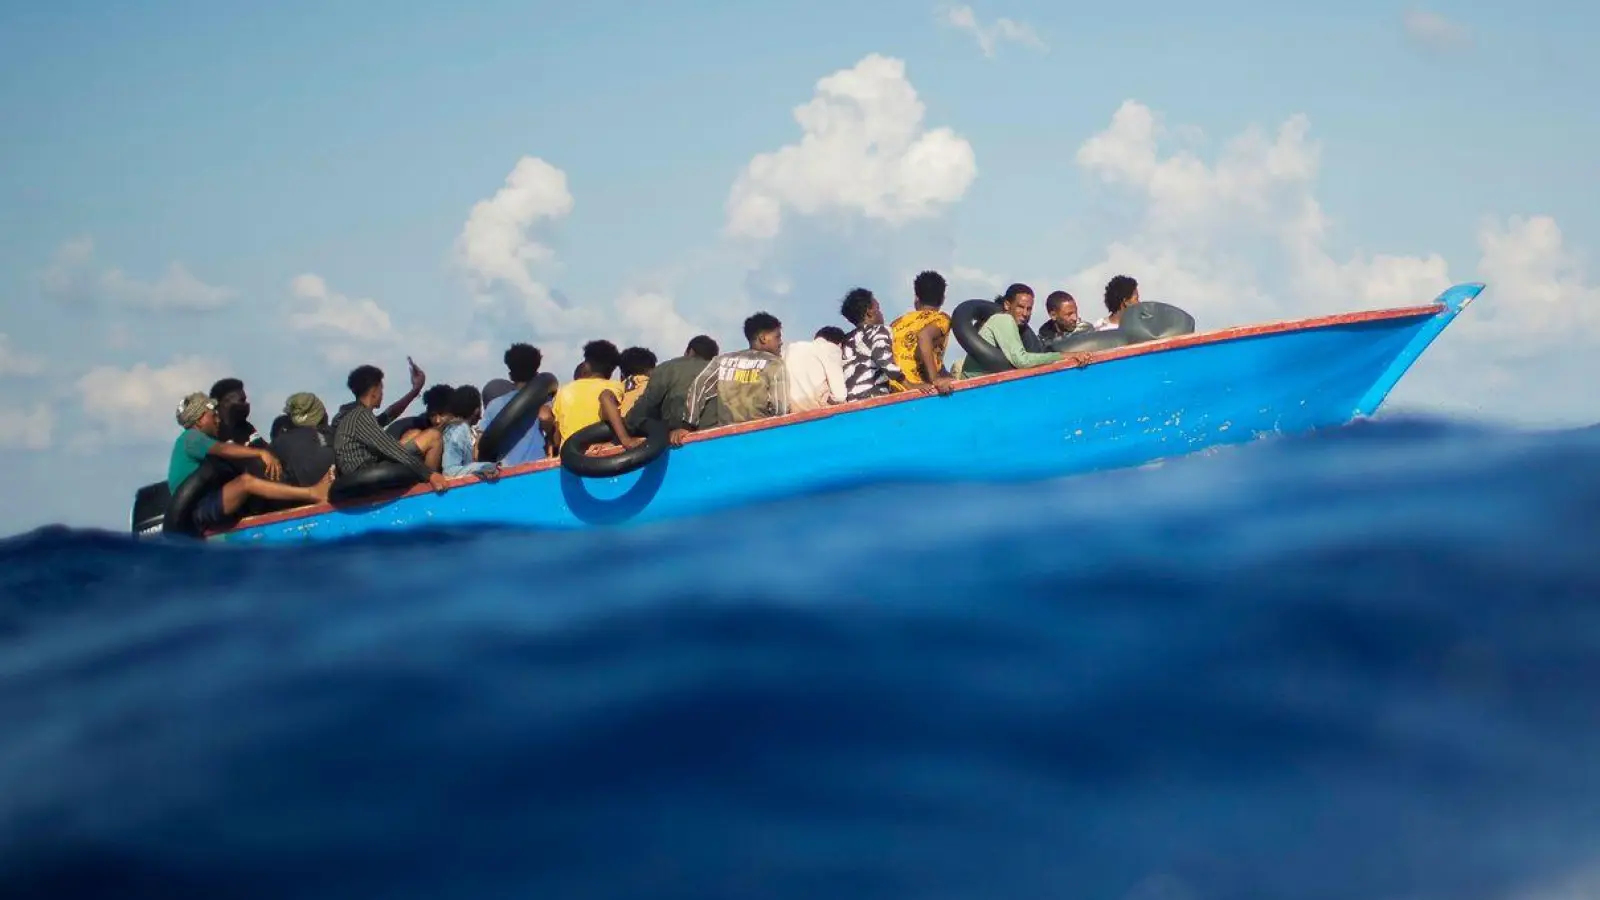 Auf dem Mittelmeer kommt es seit mehreren Jahren immer wieder zu tödlichen Katastrophen mit Flüchtlingsbooten (Archivbild). (Foto: Francisco Seco/AP/dpa)